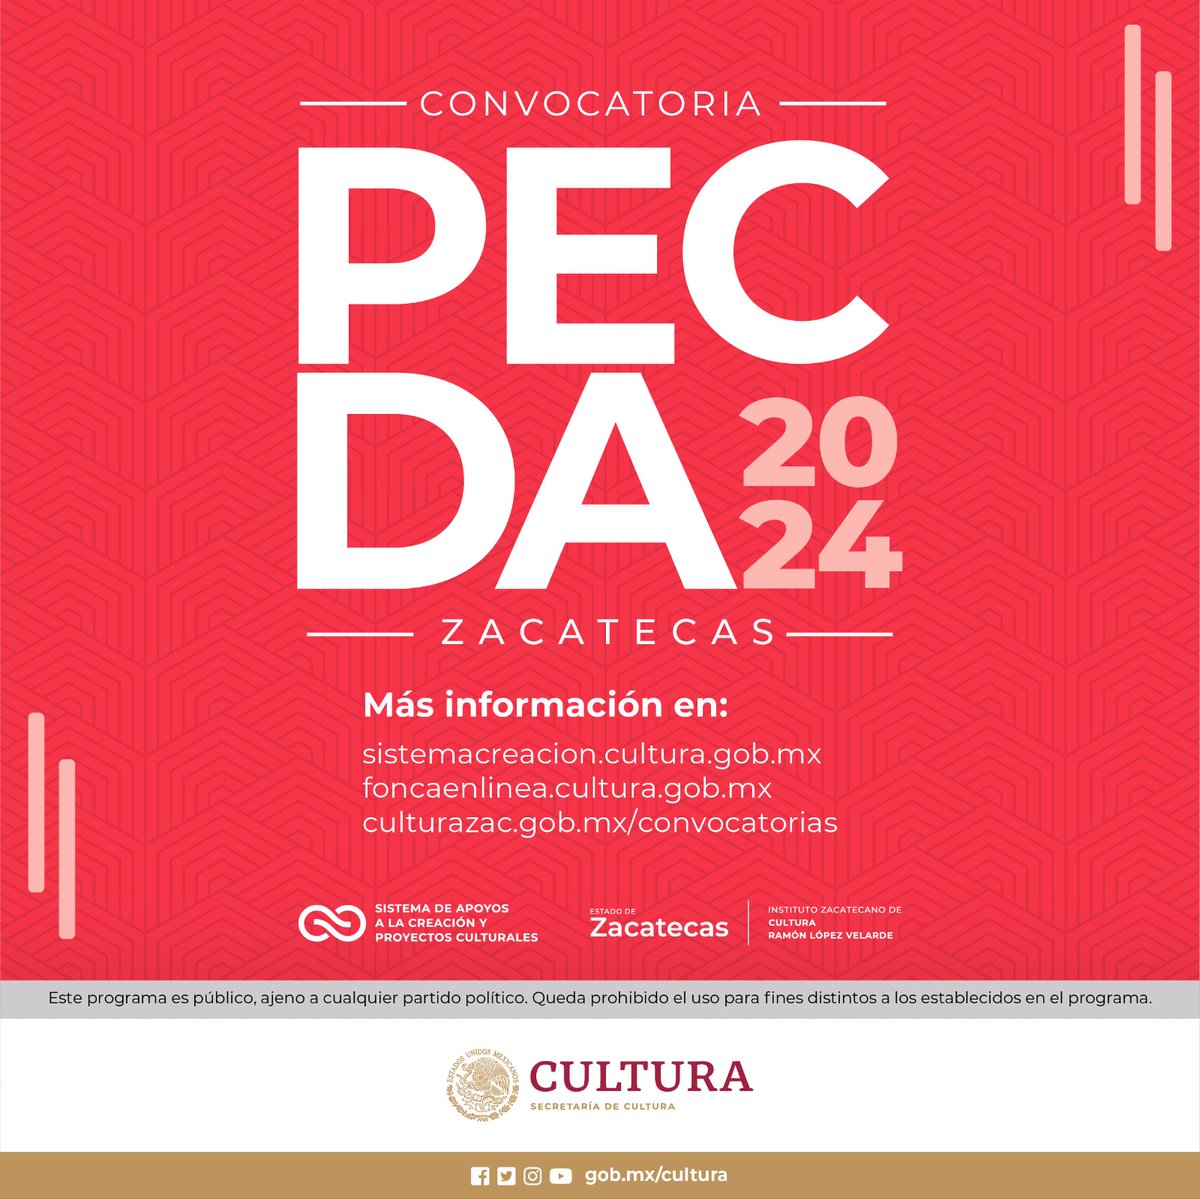 📢¡Aquí está la convocatoria PECDA Zacatecas 2024! 🔴Consulta sus bases y participa: goo.su/rcBAb @cultura_mx @IZCultura